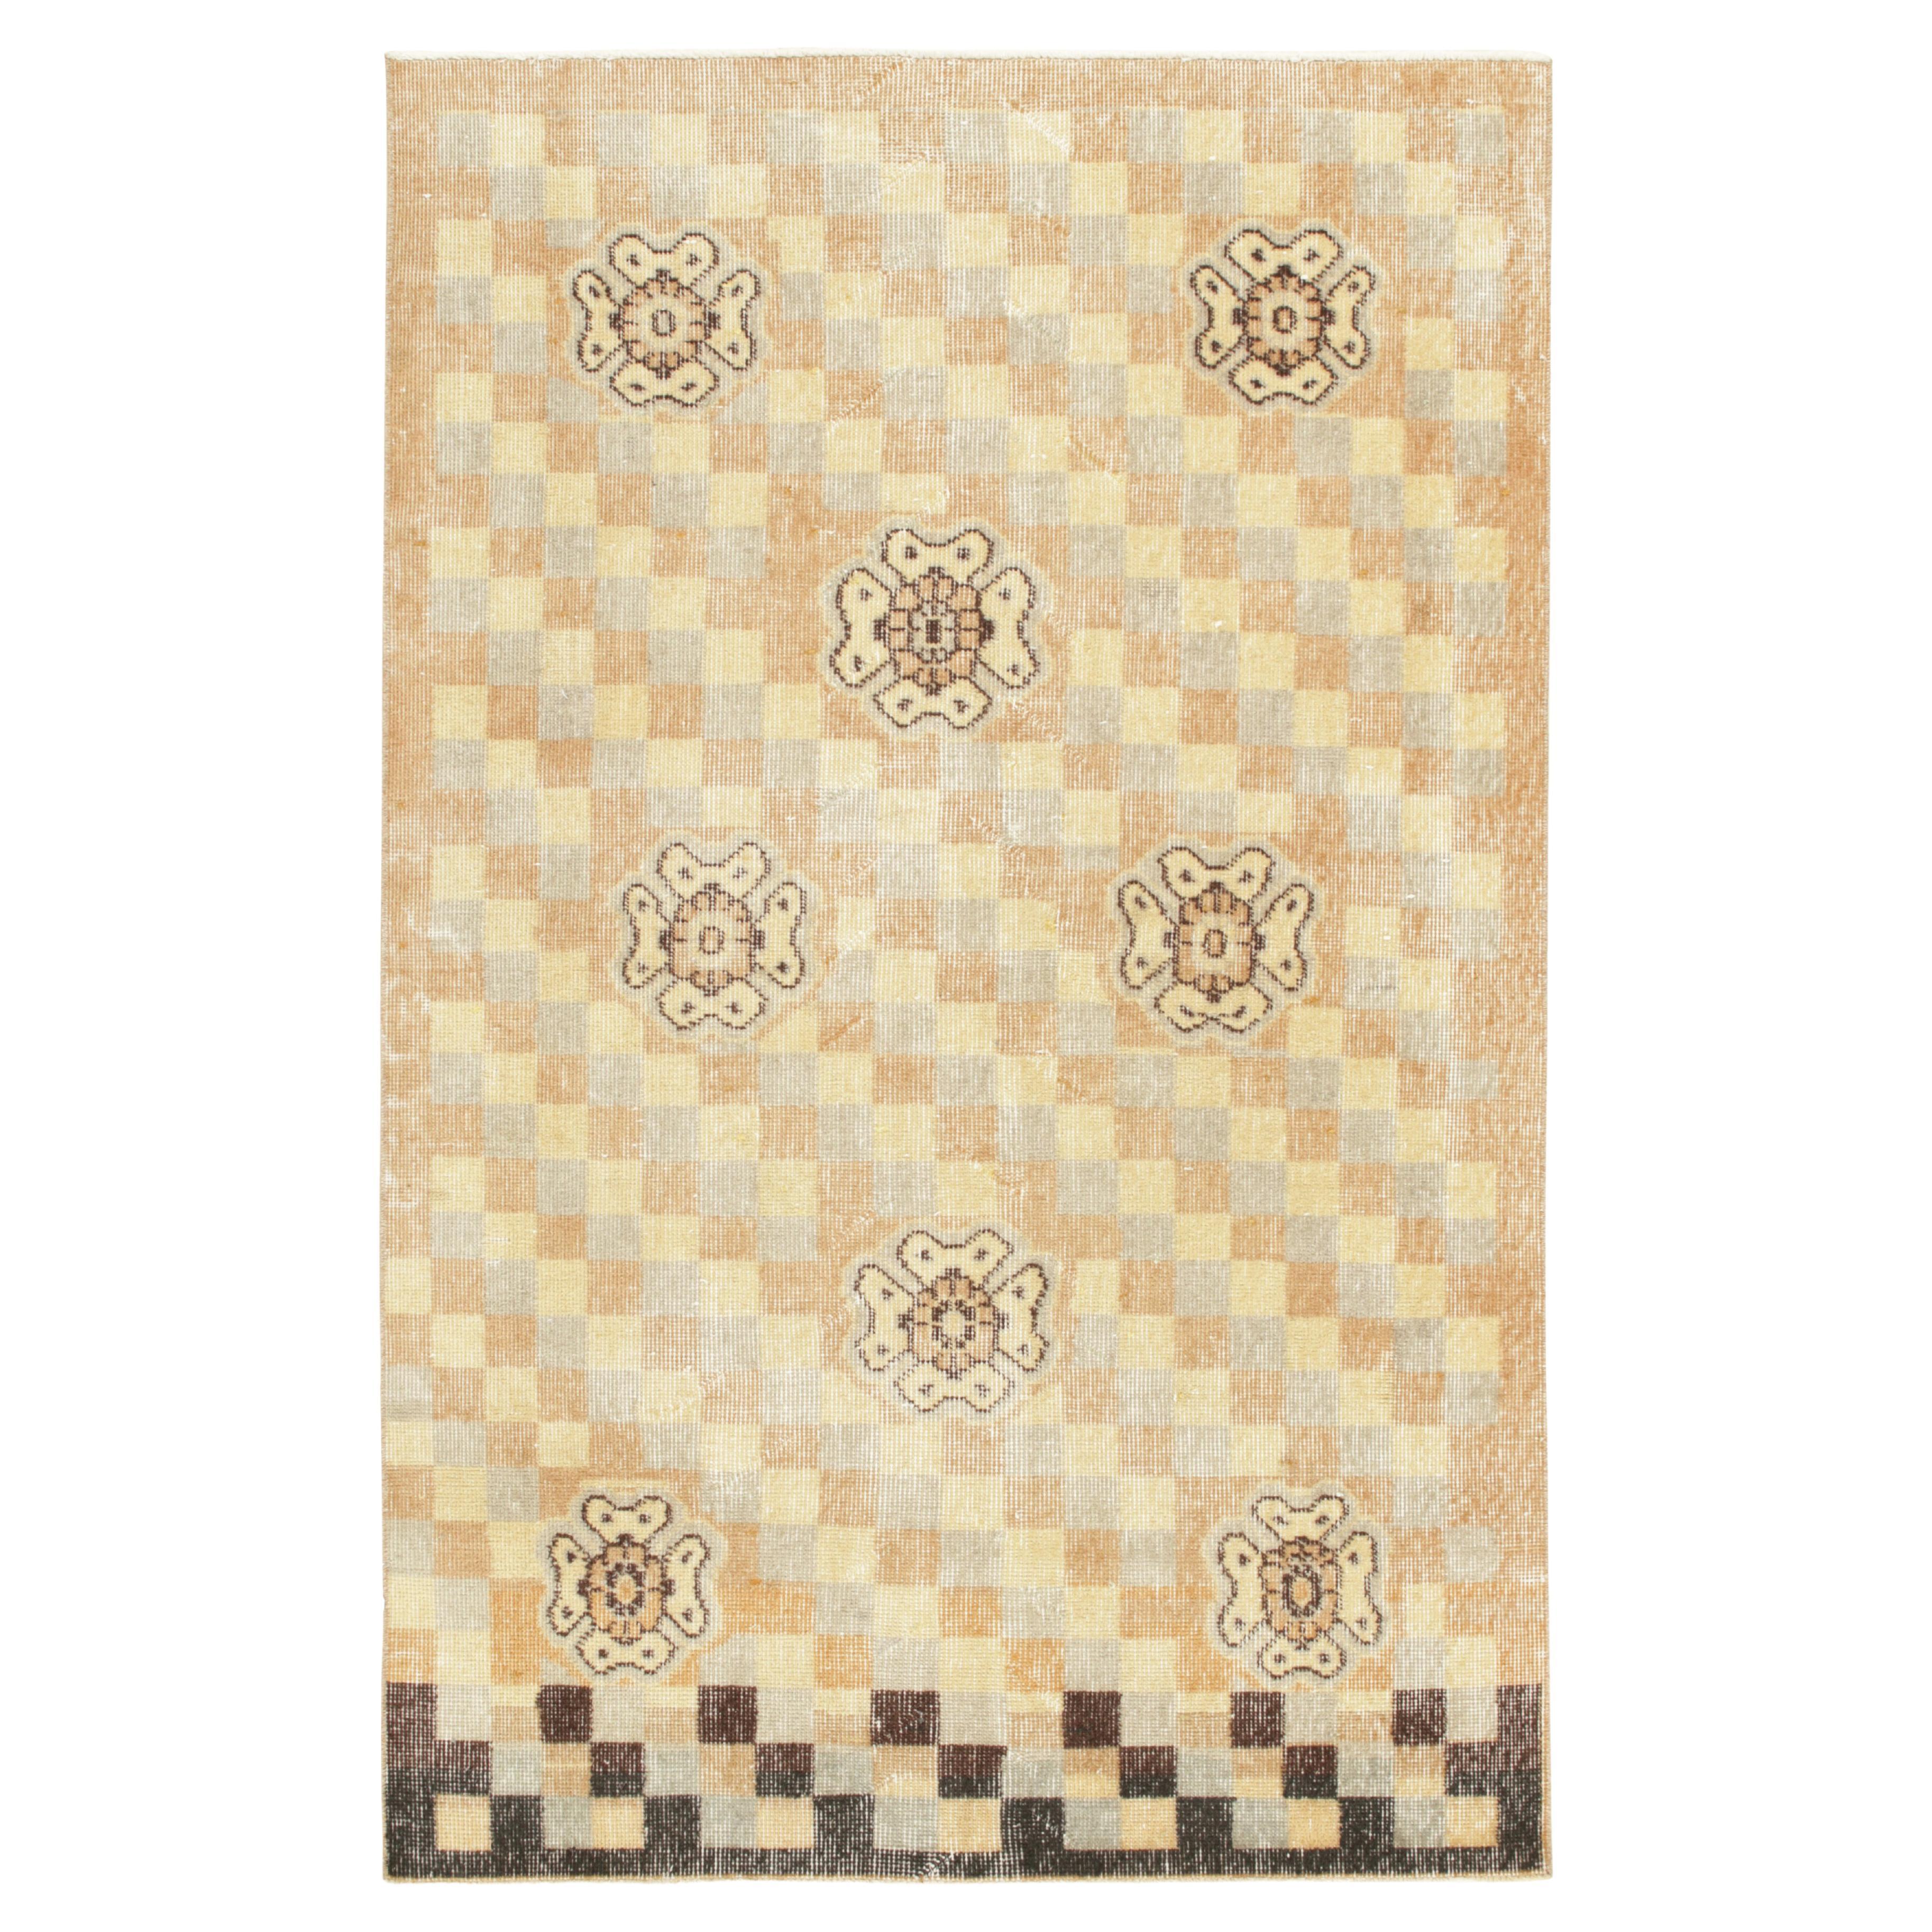 Vintage Zeki Müren Teppich in Beige-Braun und Grau Geometrisches Muster, von Rug & Kilim